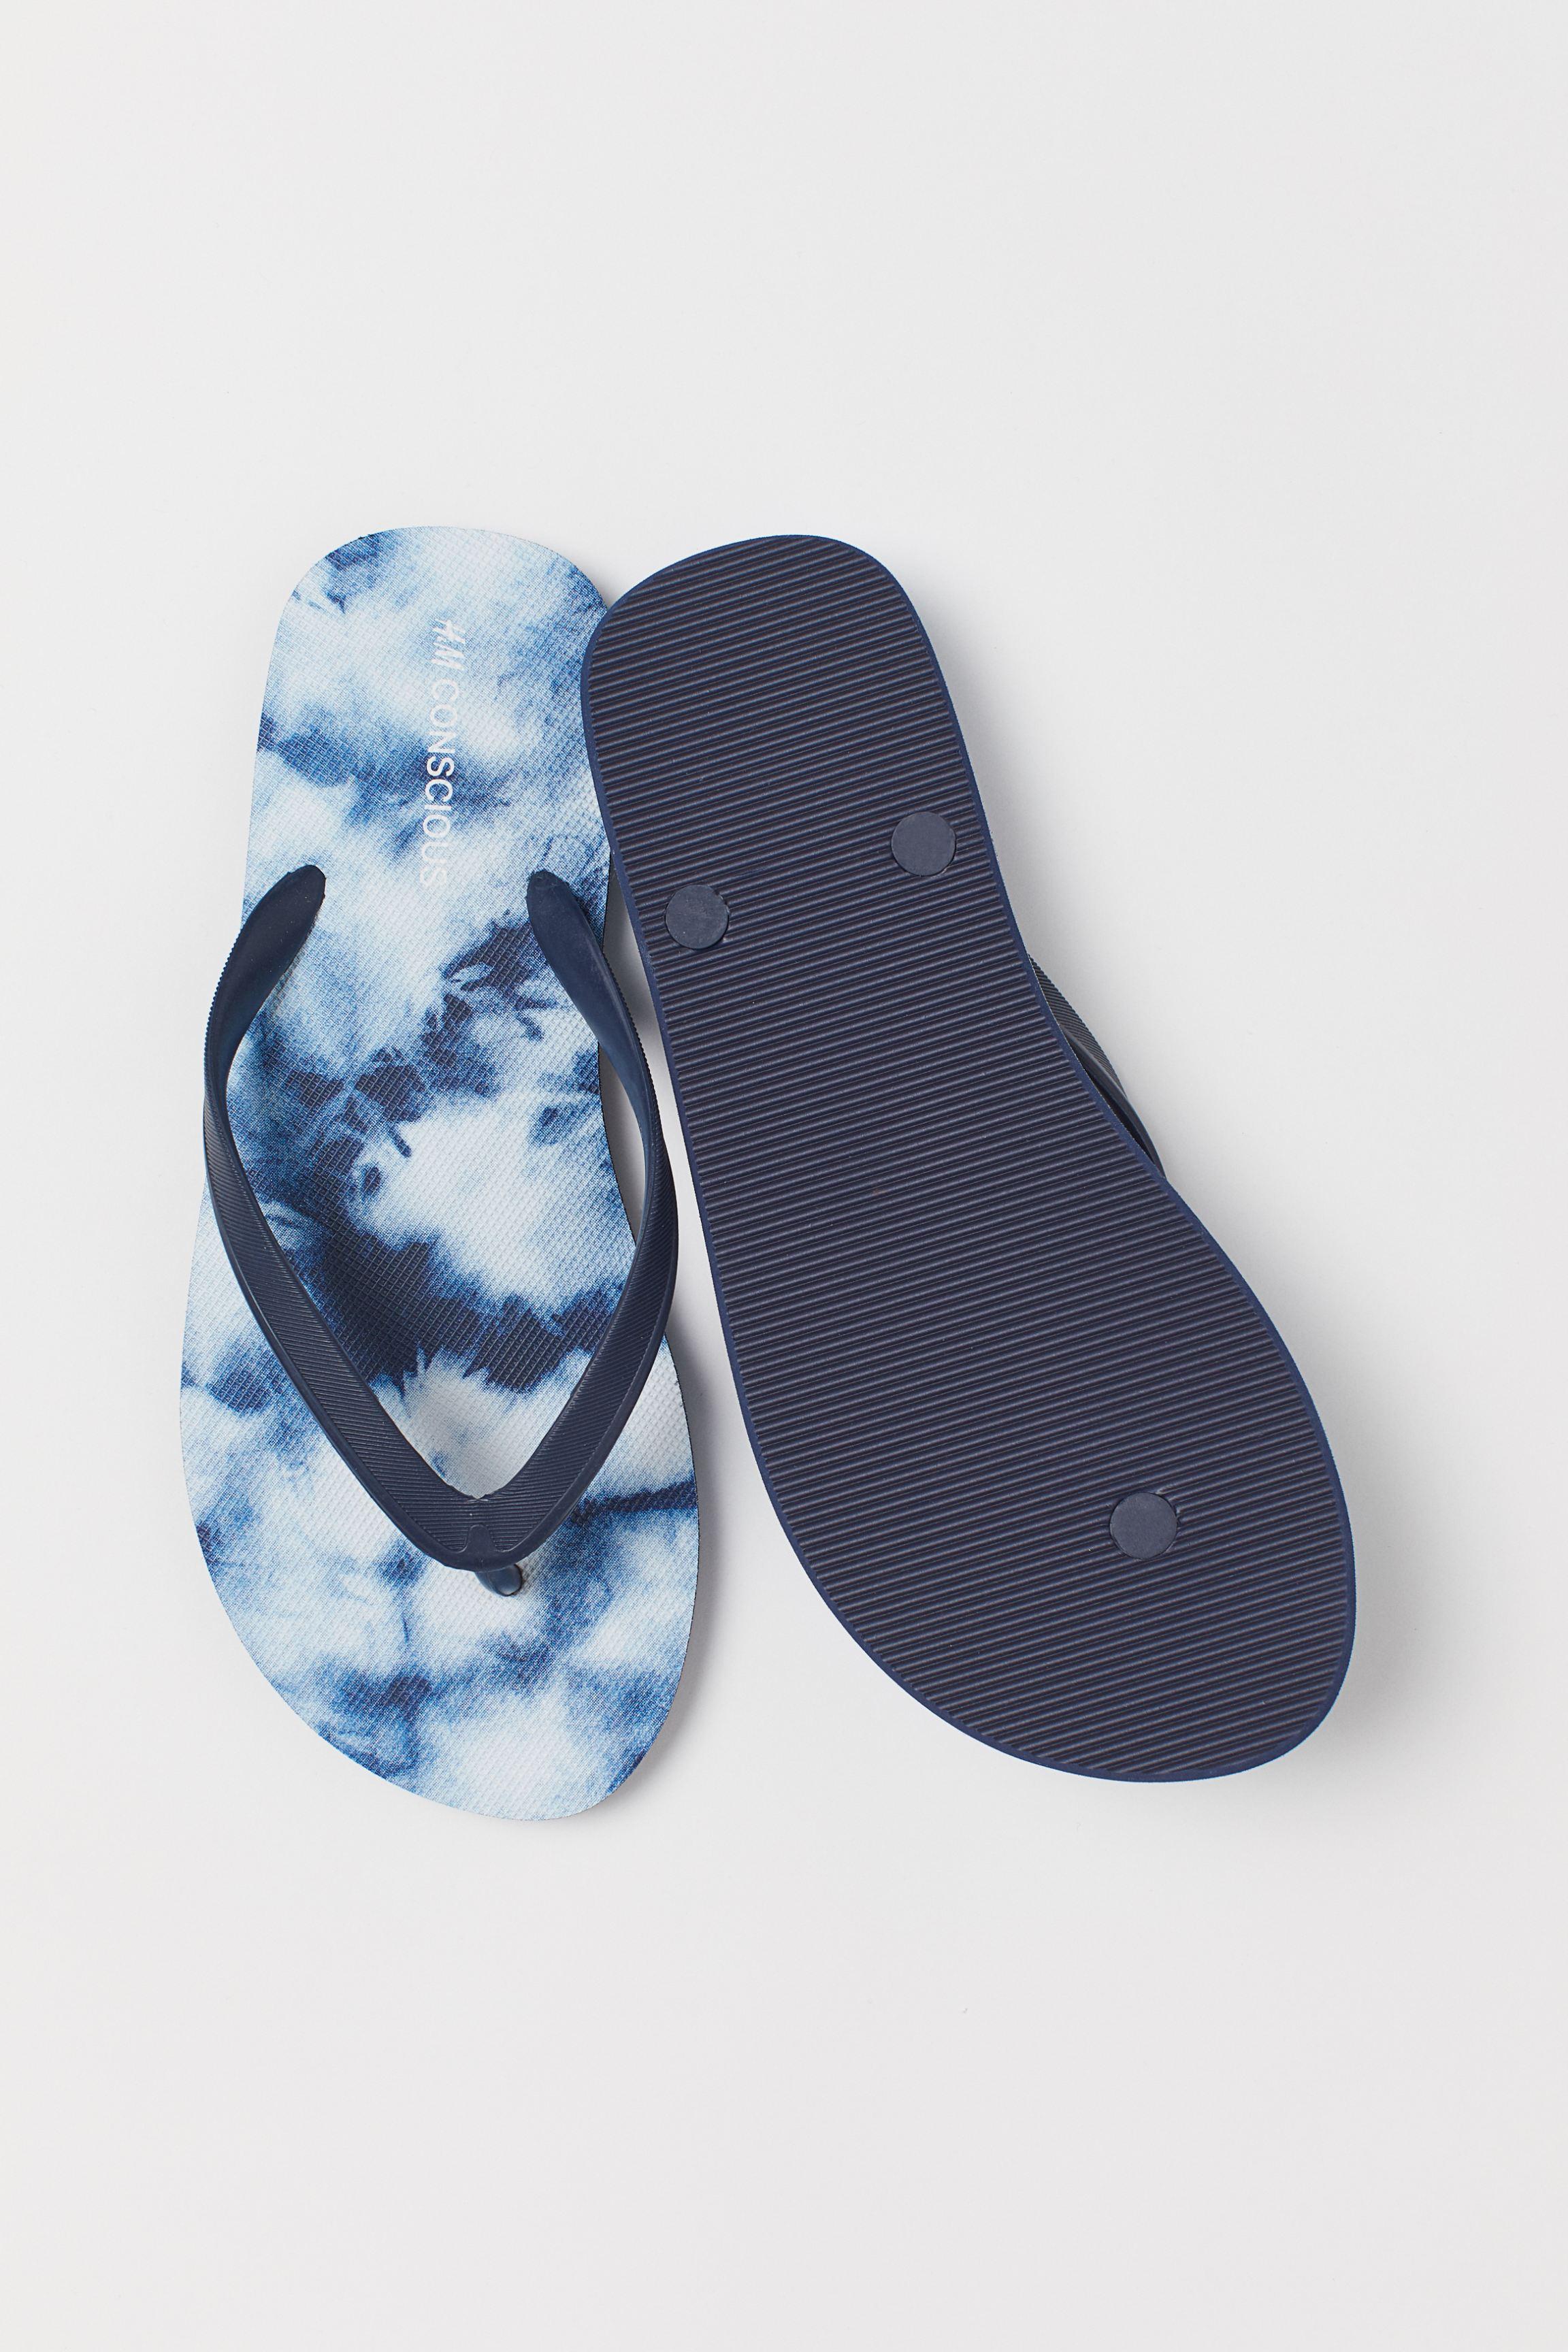 H&M Rubber Flip-flops in Dark Blue/Batik-Patterned (Blue) for Men - Lyst